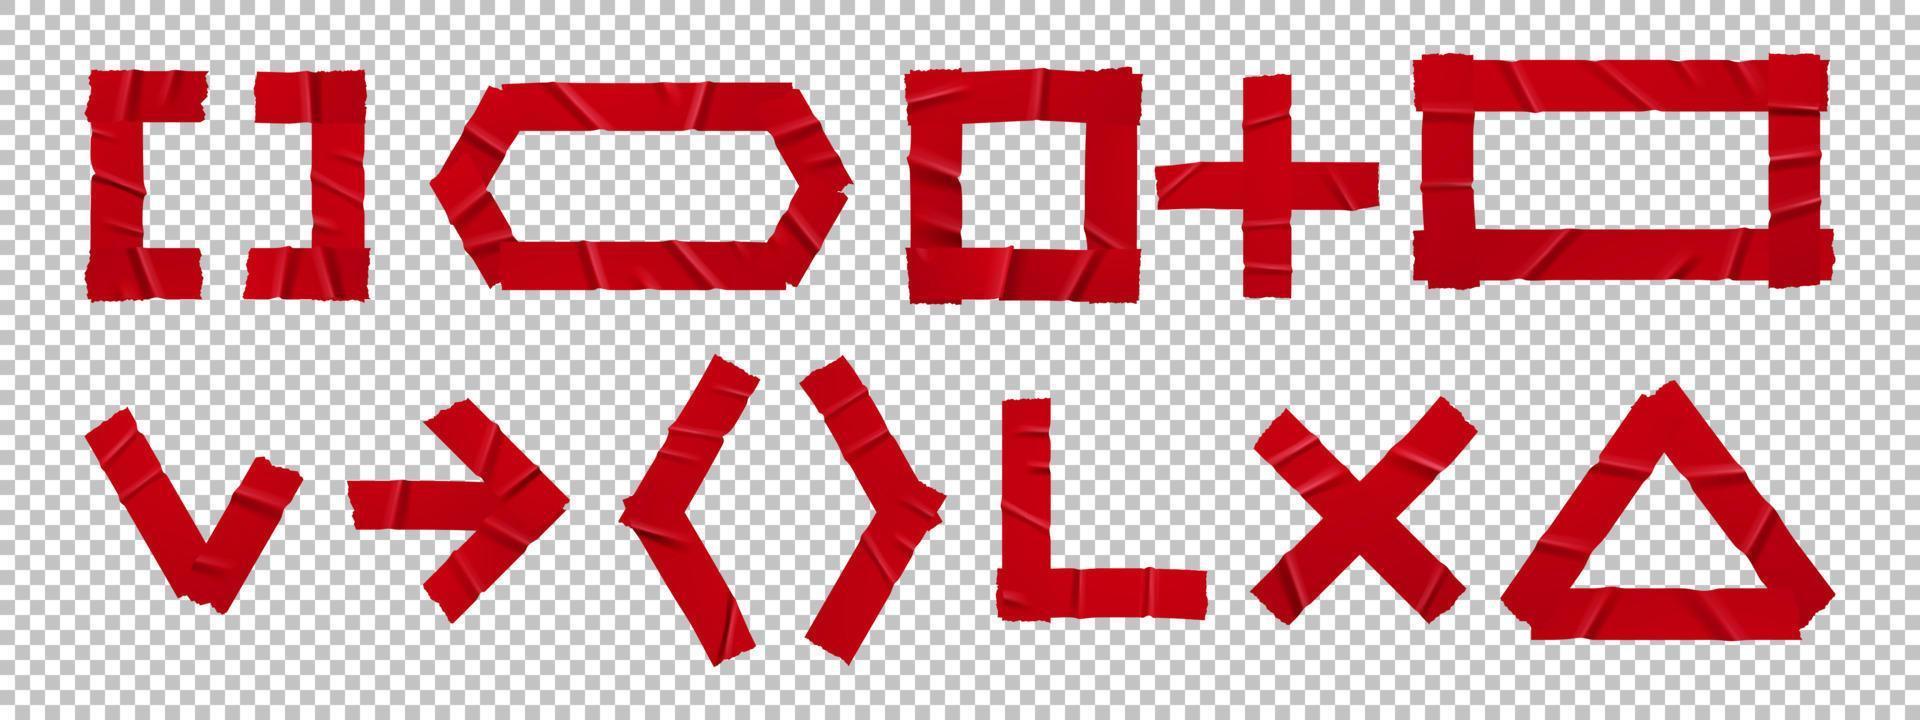 röd limmad tejp plåster tecken och symboler uppsättning vektor